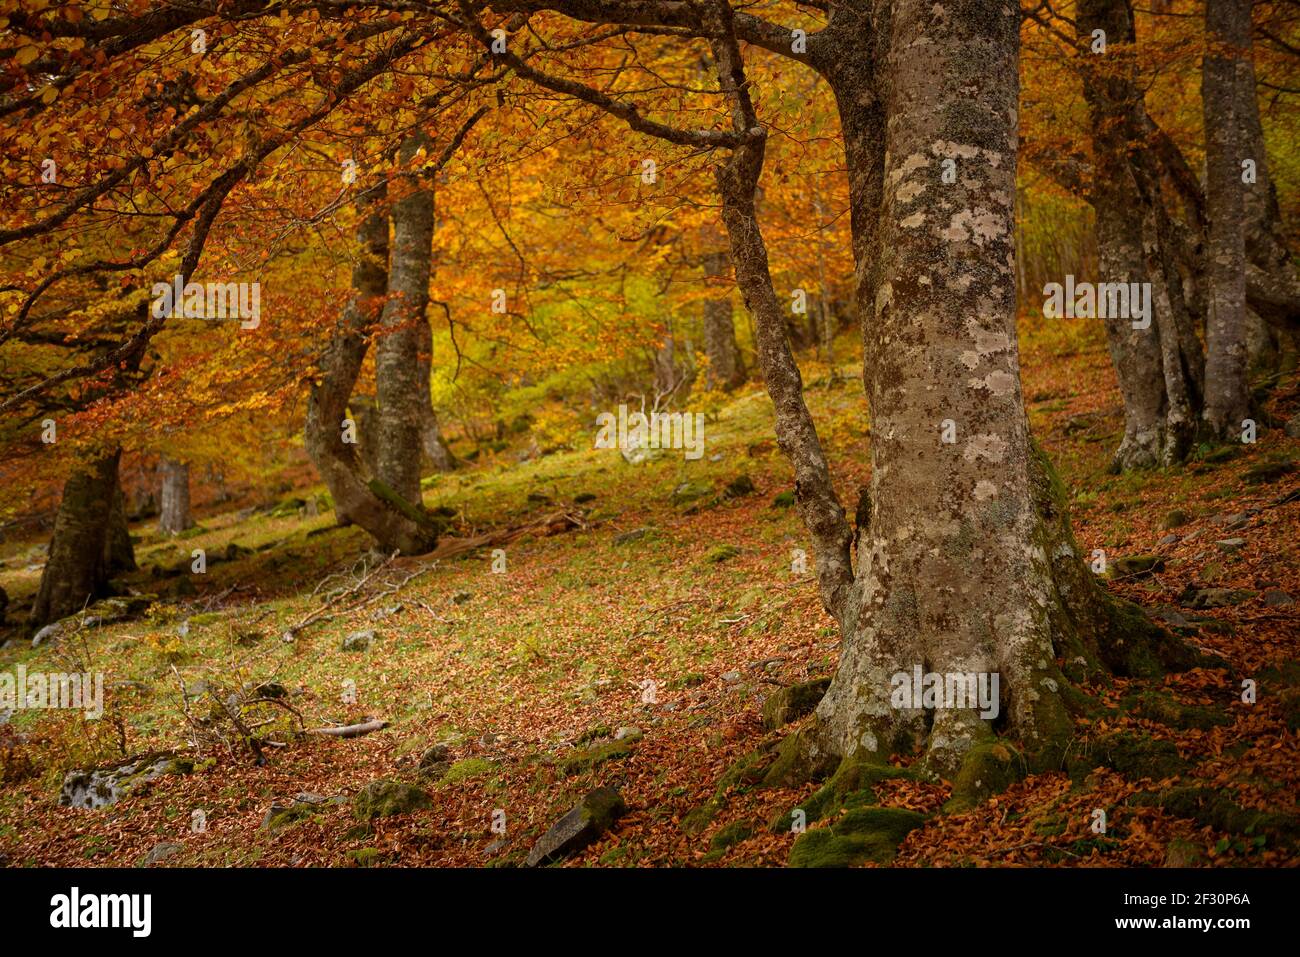 Buchenwald im Artiga de Lin-Tal, im Herbst (Aran-Tal, Katalonien, Spanien, Pyrenäen) ESP: Hayedo del valle de Artiga de Lin, en otoño Stockfoto